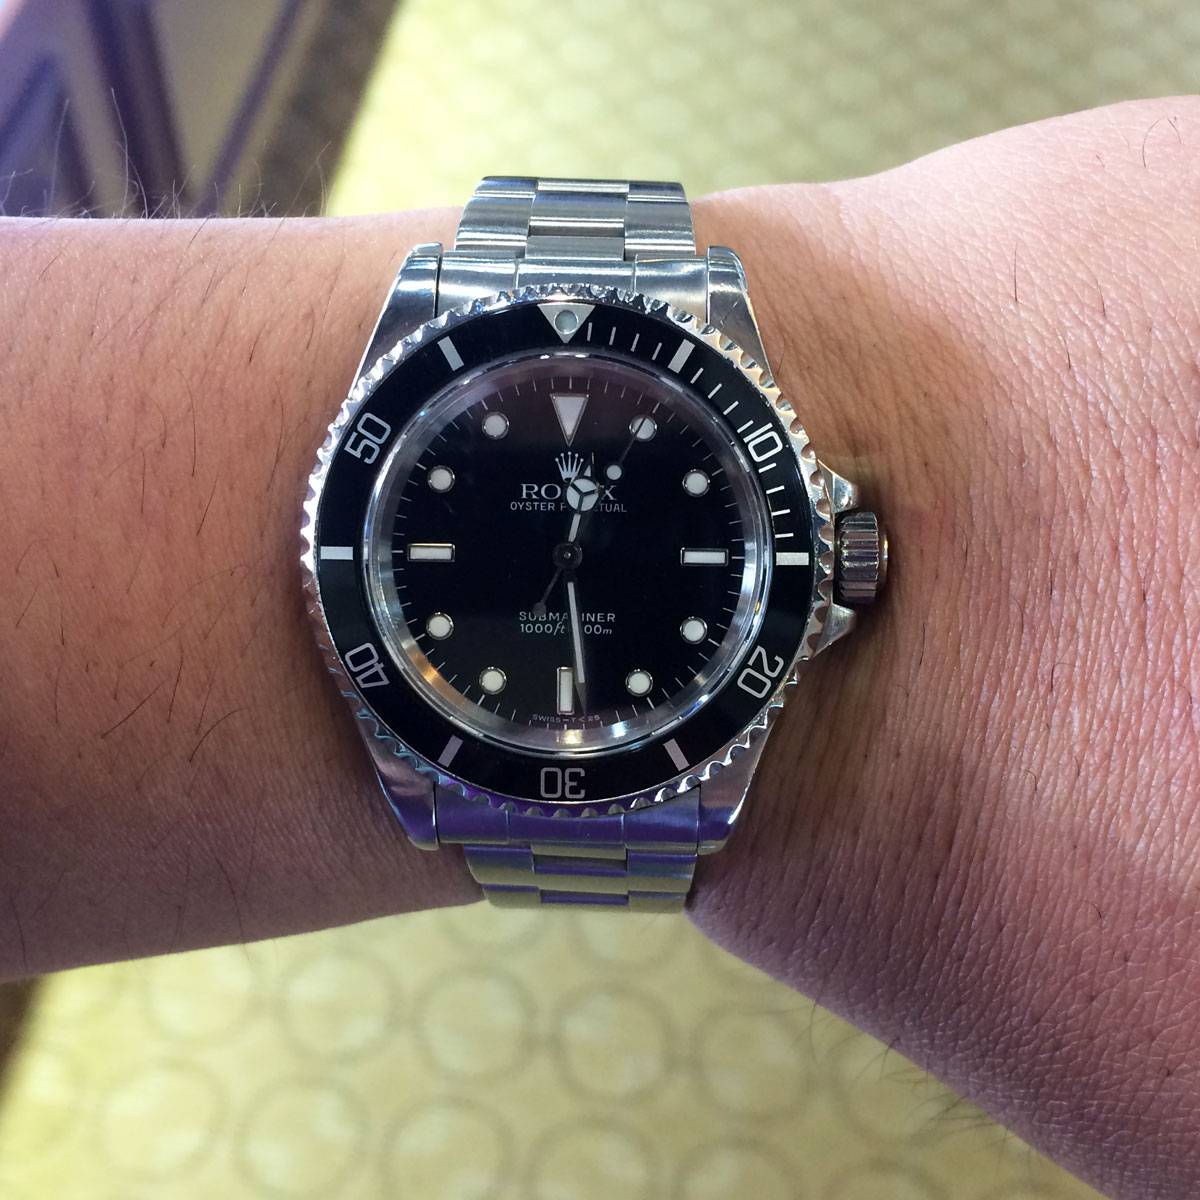 Rolex 14060 Submariner Non-Date Black Dial Steel Watch